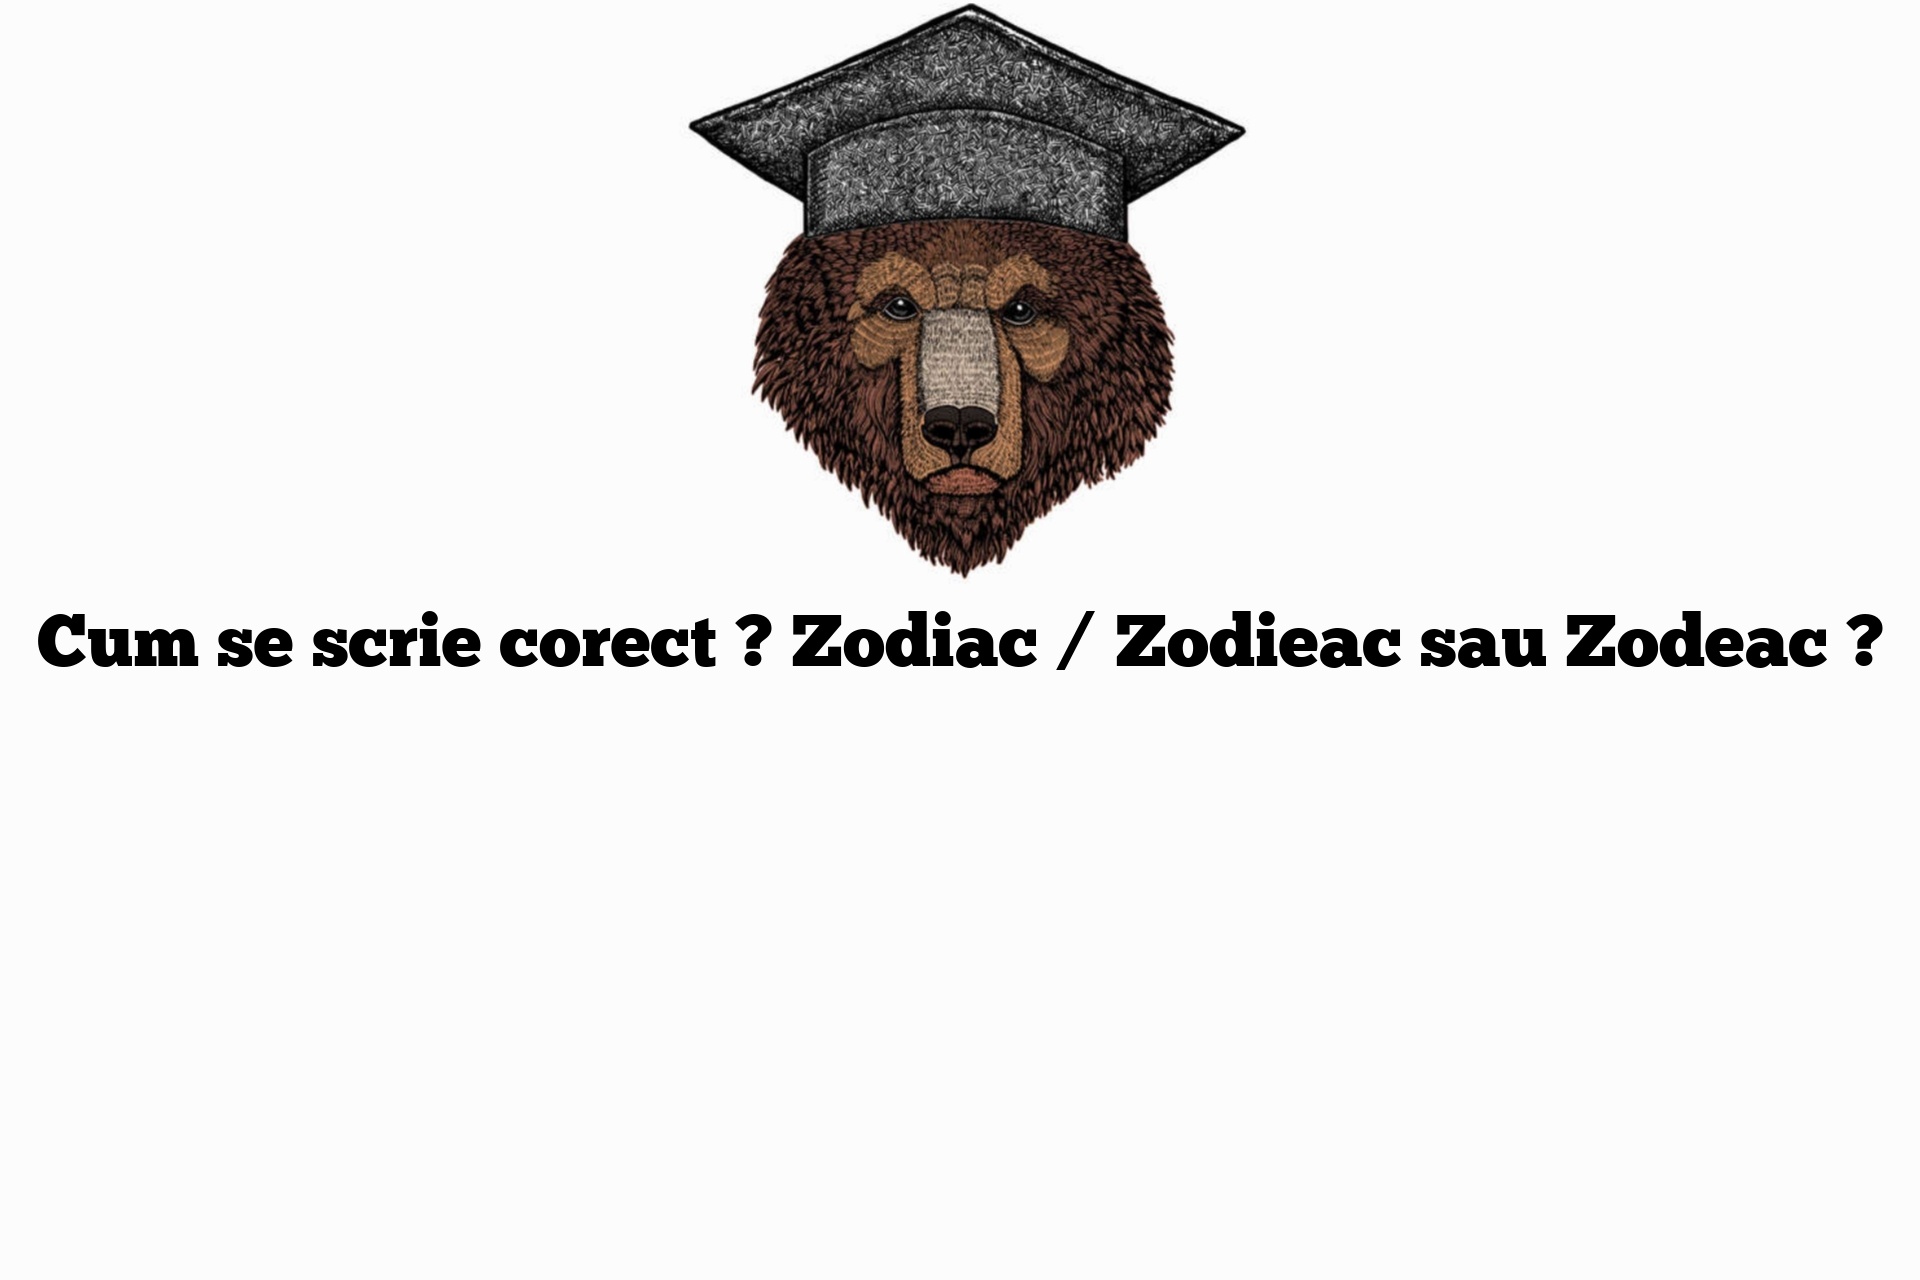 Cum se scrie corect ? Zodiac / Zodieac sau Zodeac ?